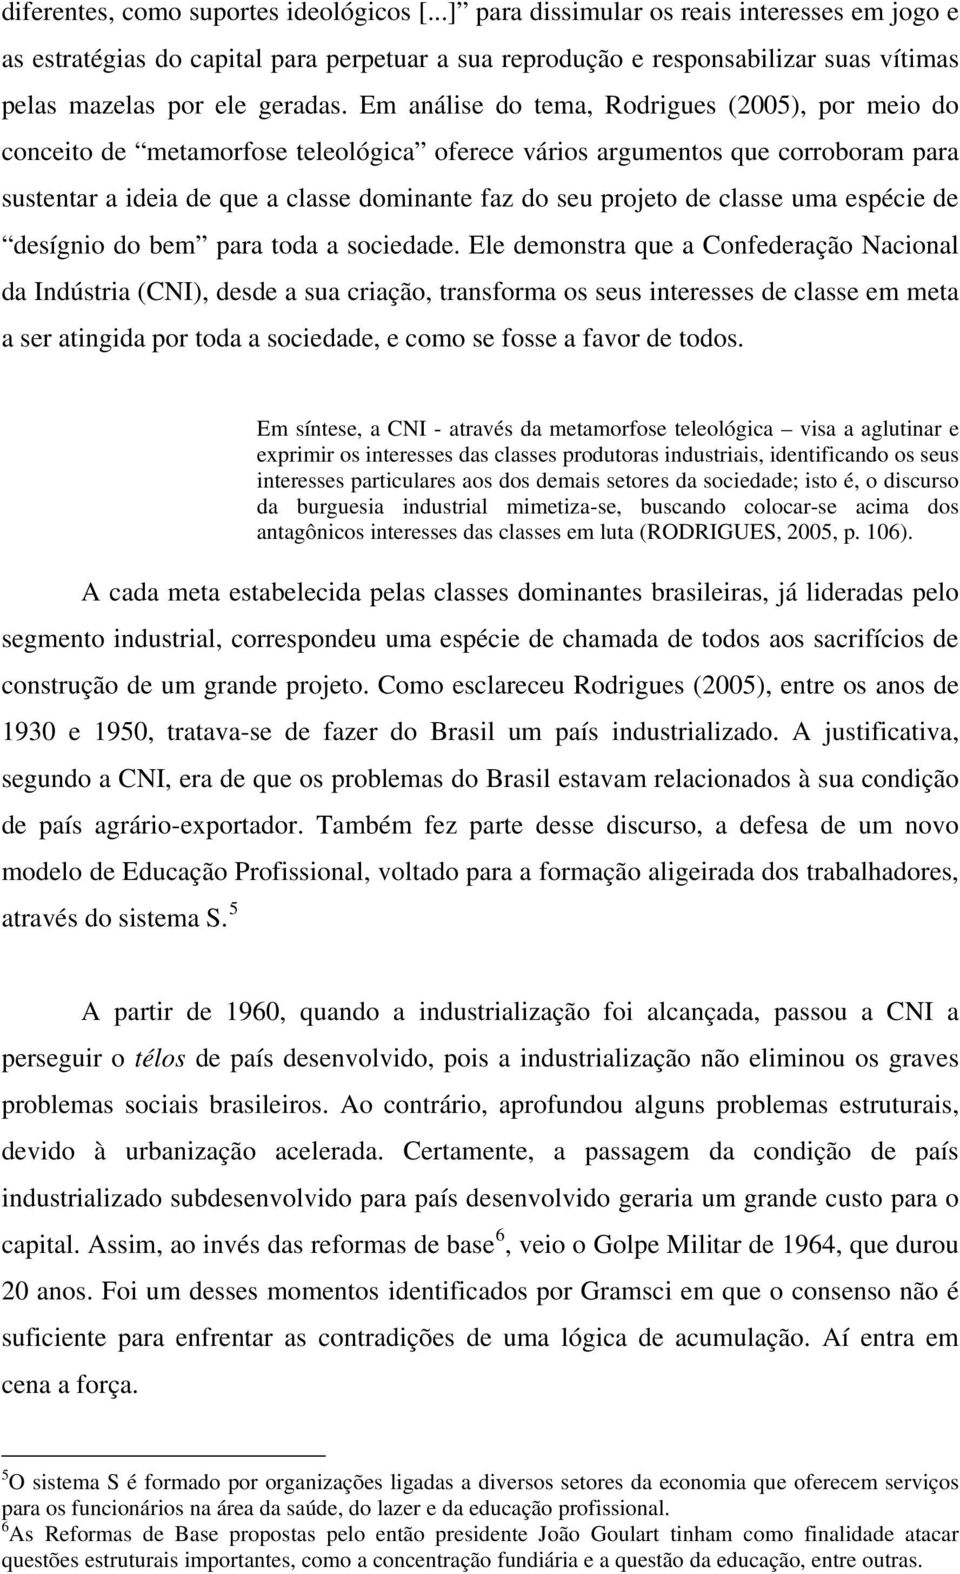 Em análise do tema, Rodrigues (2005), por meio do conceito de metamorfose teleológica oferece vários argumentos que corroboram para sustentar a ideia de que a classe dominante faz do seu projeto de